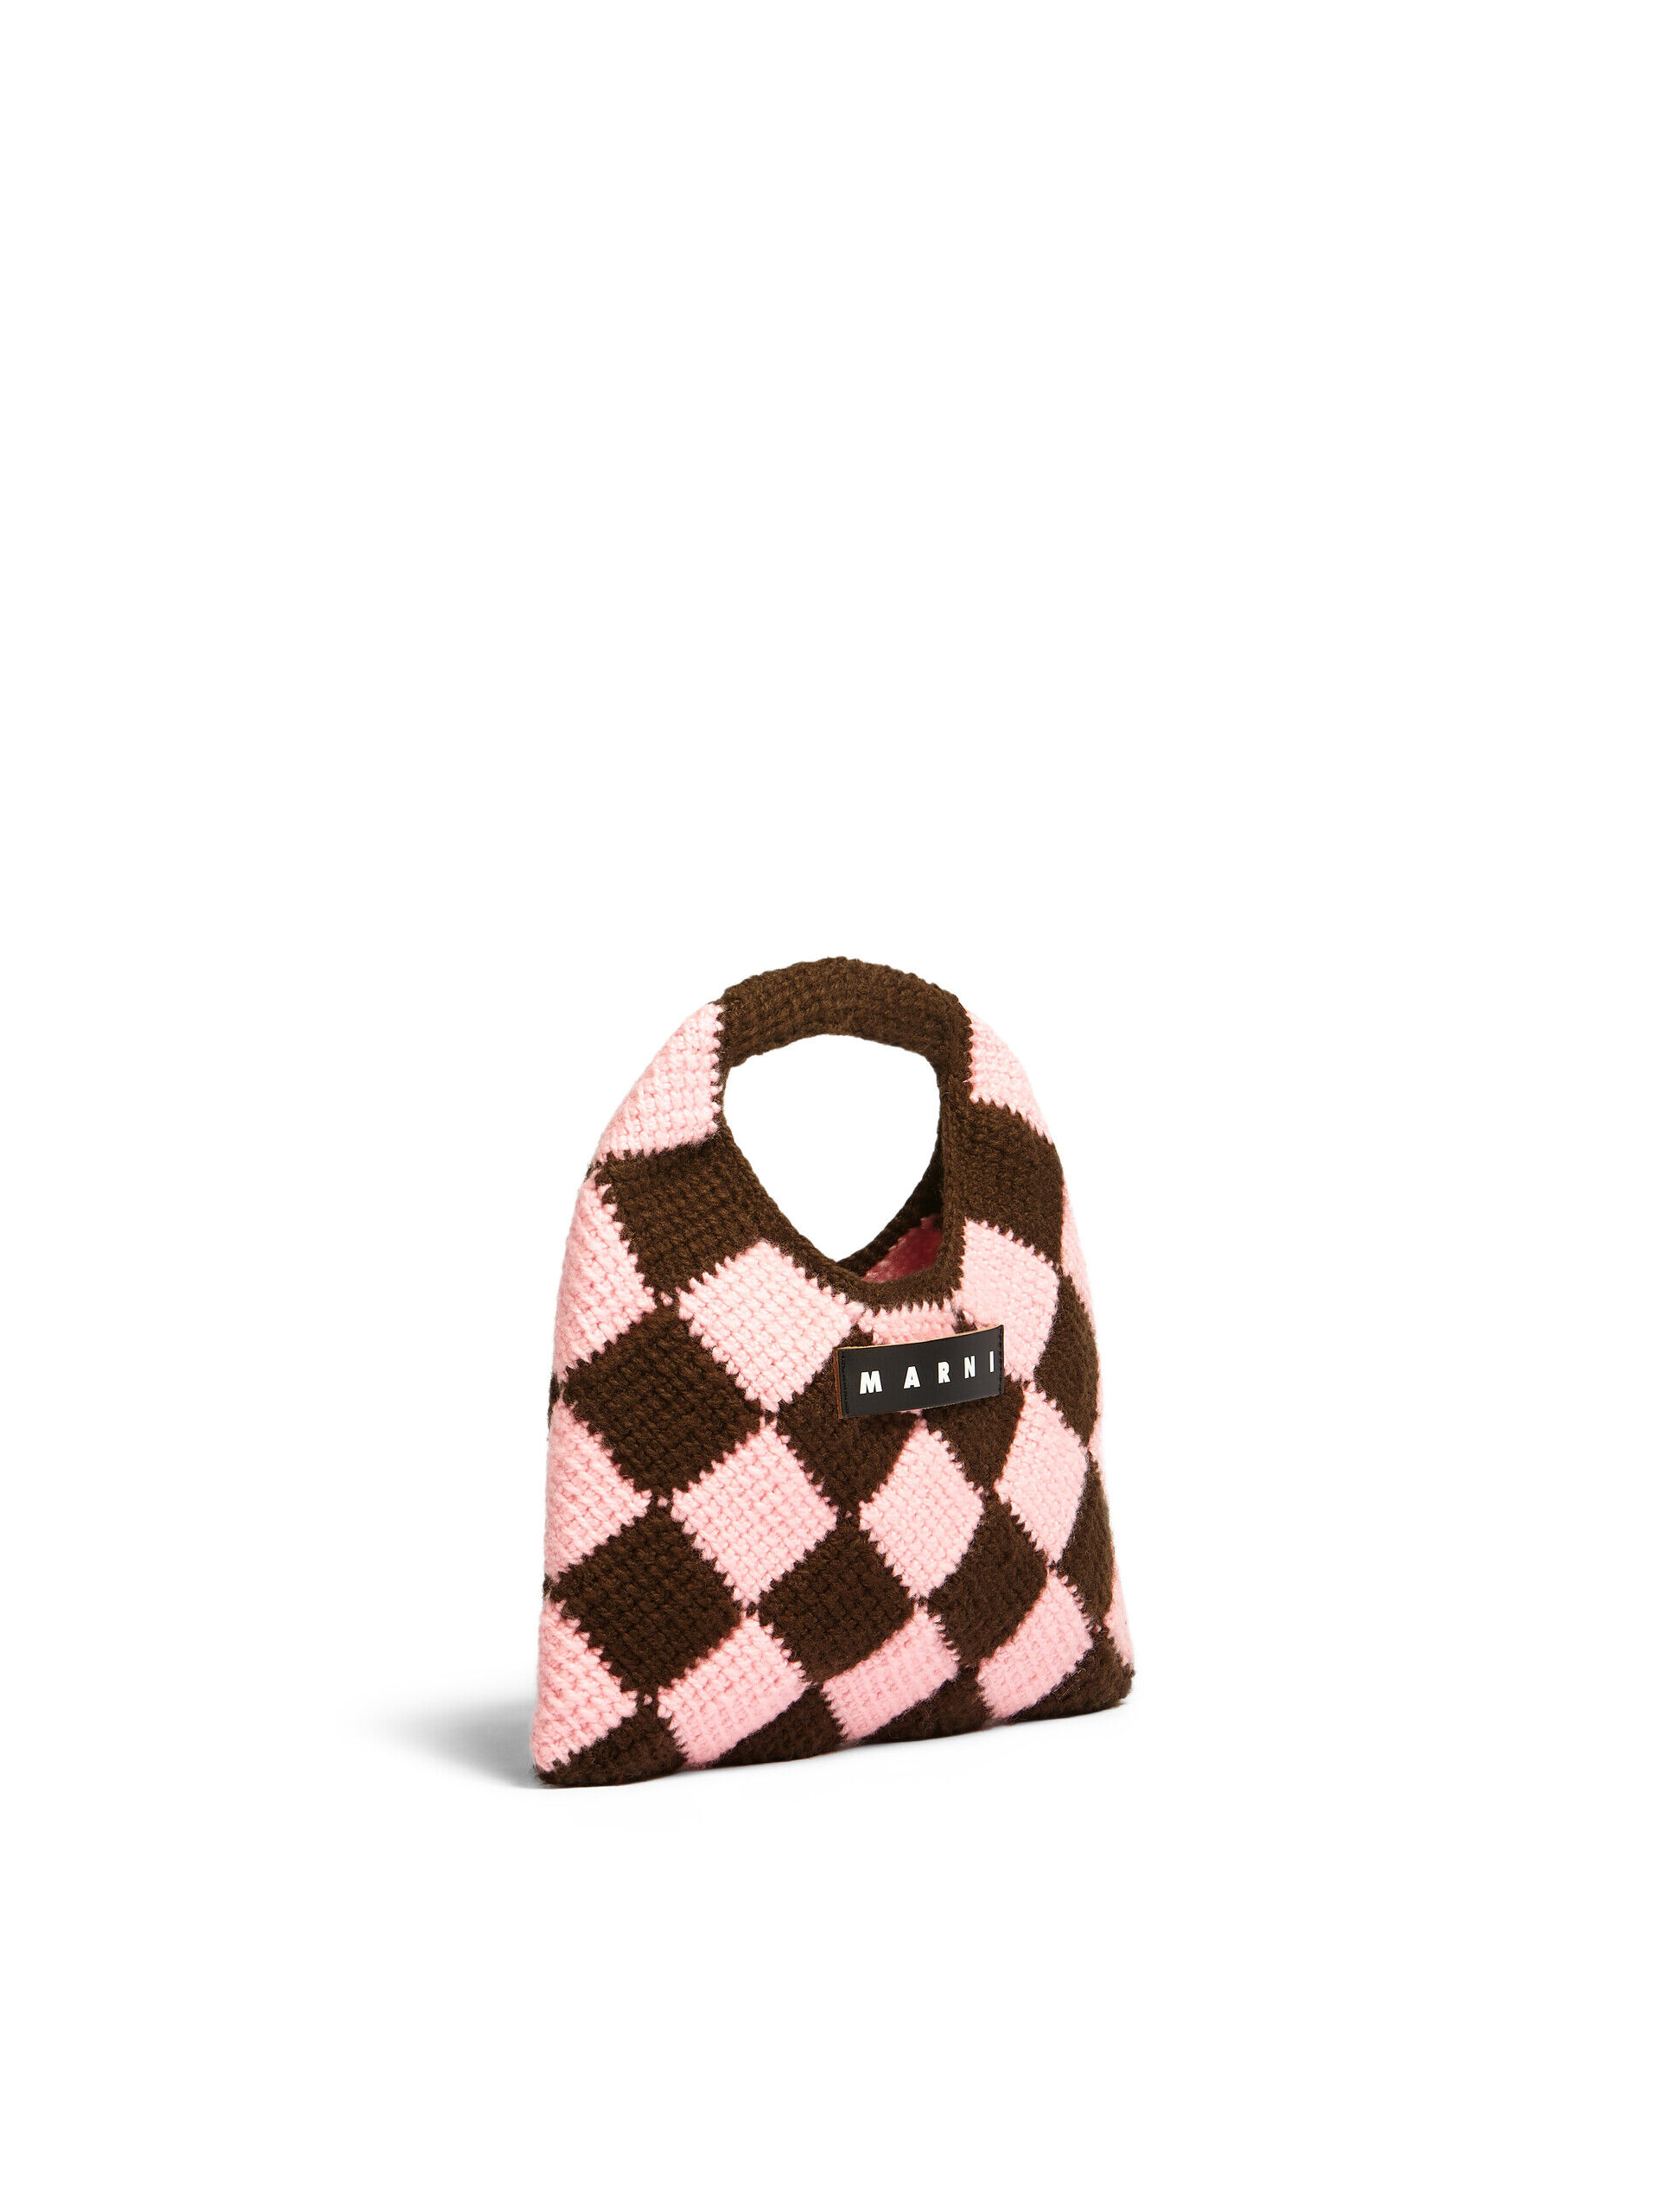 ブラウン&ピンク テックウール製 MARNI MARKET DIAMONDスモールバッグ 